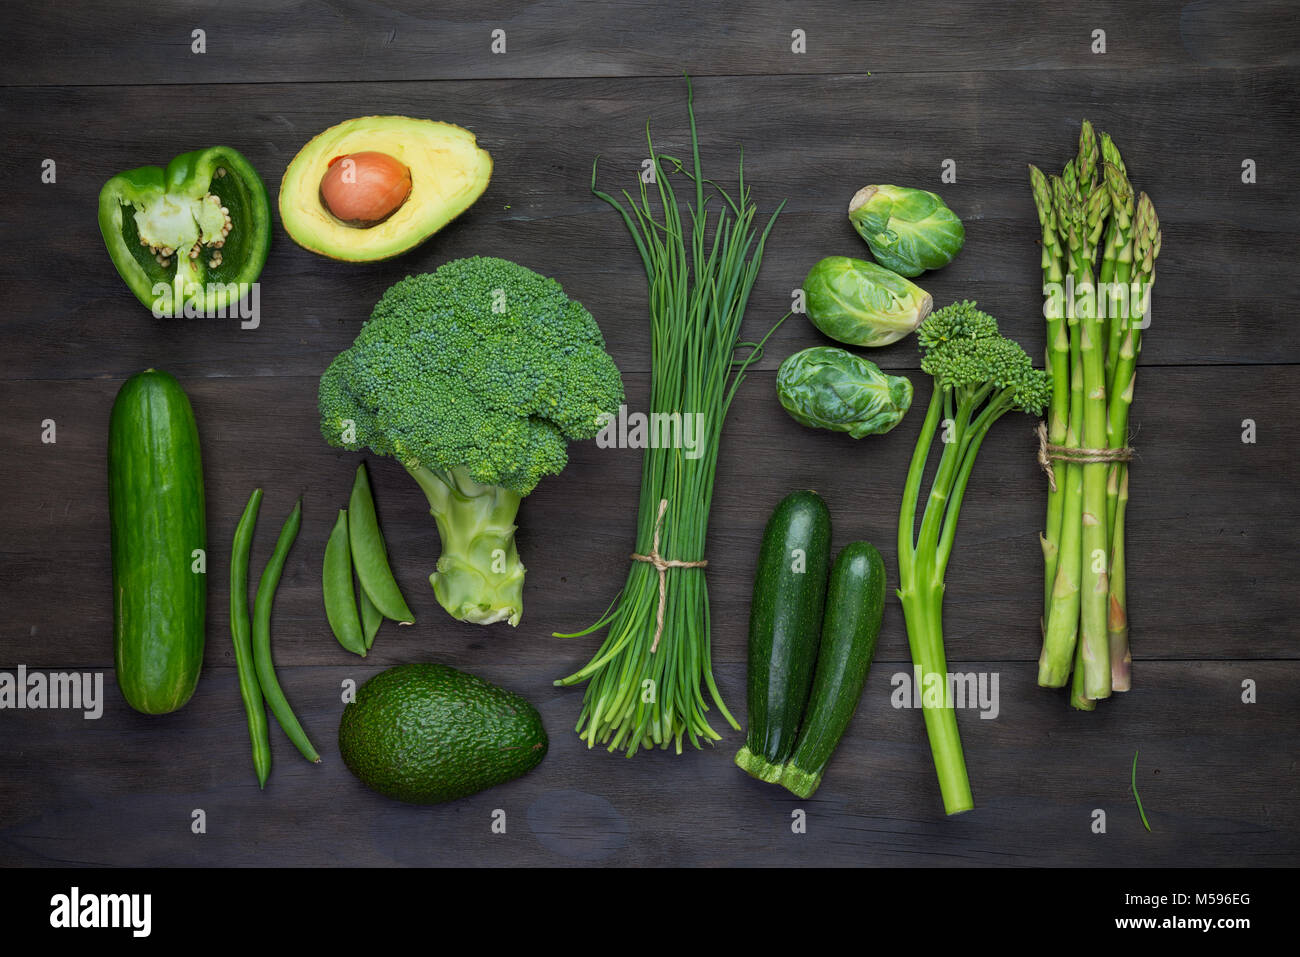 Frisches Grün Bio Gemüse auf schwarzem Holz- vintage table.Organic Gemüse Top View Stockfoto